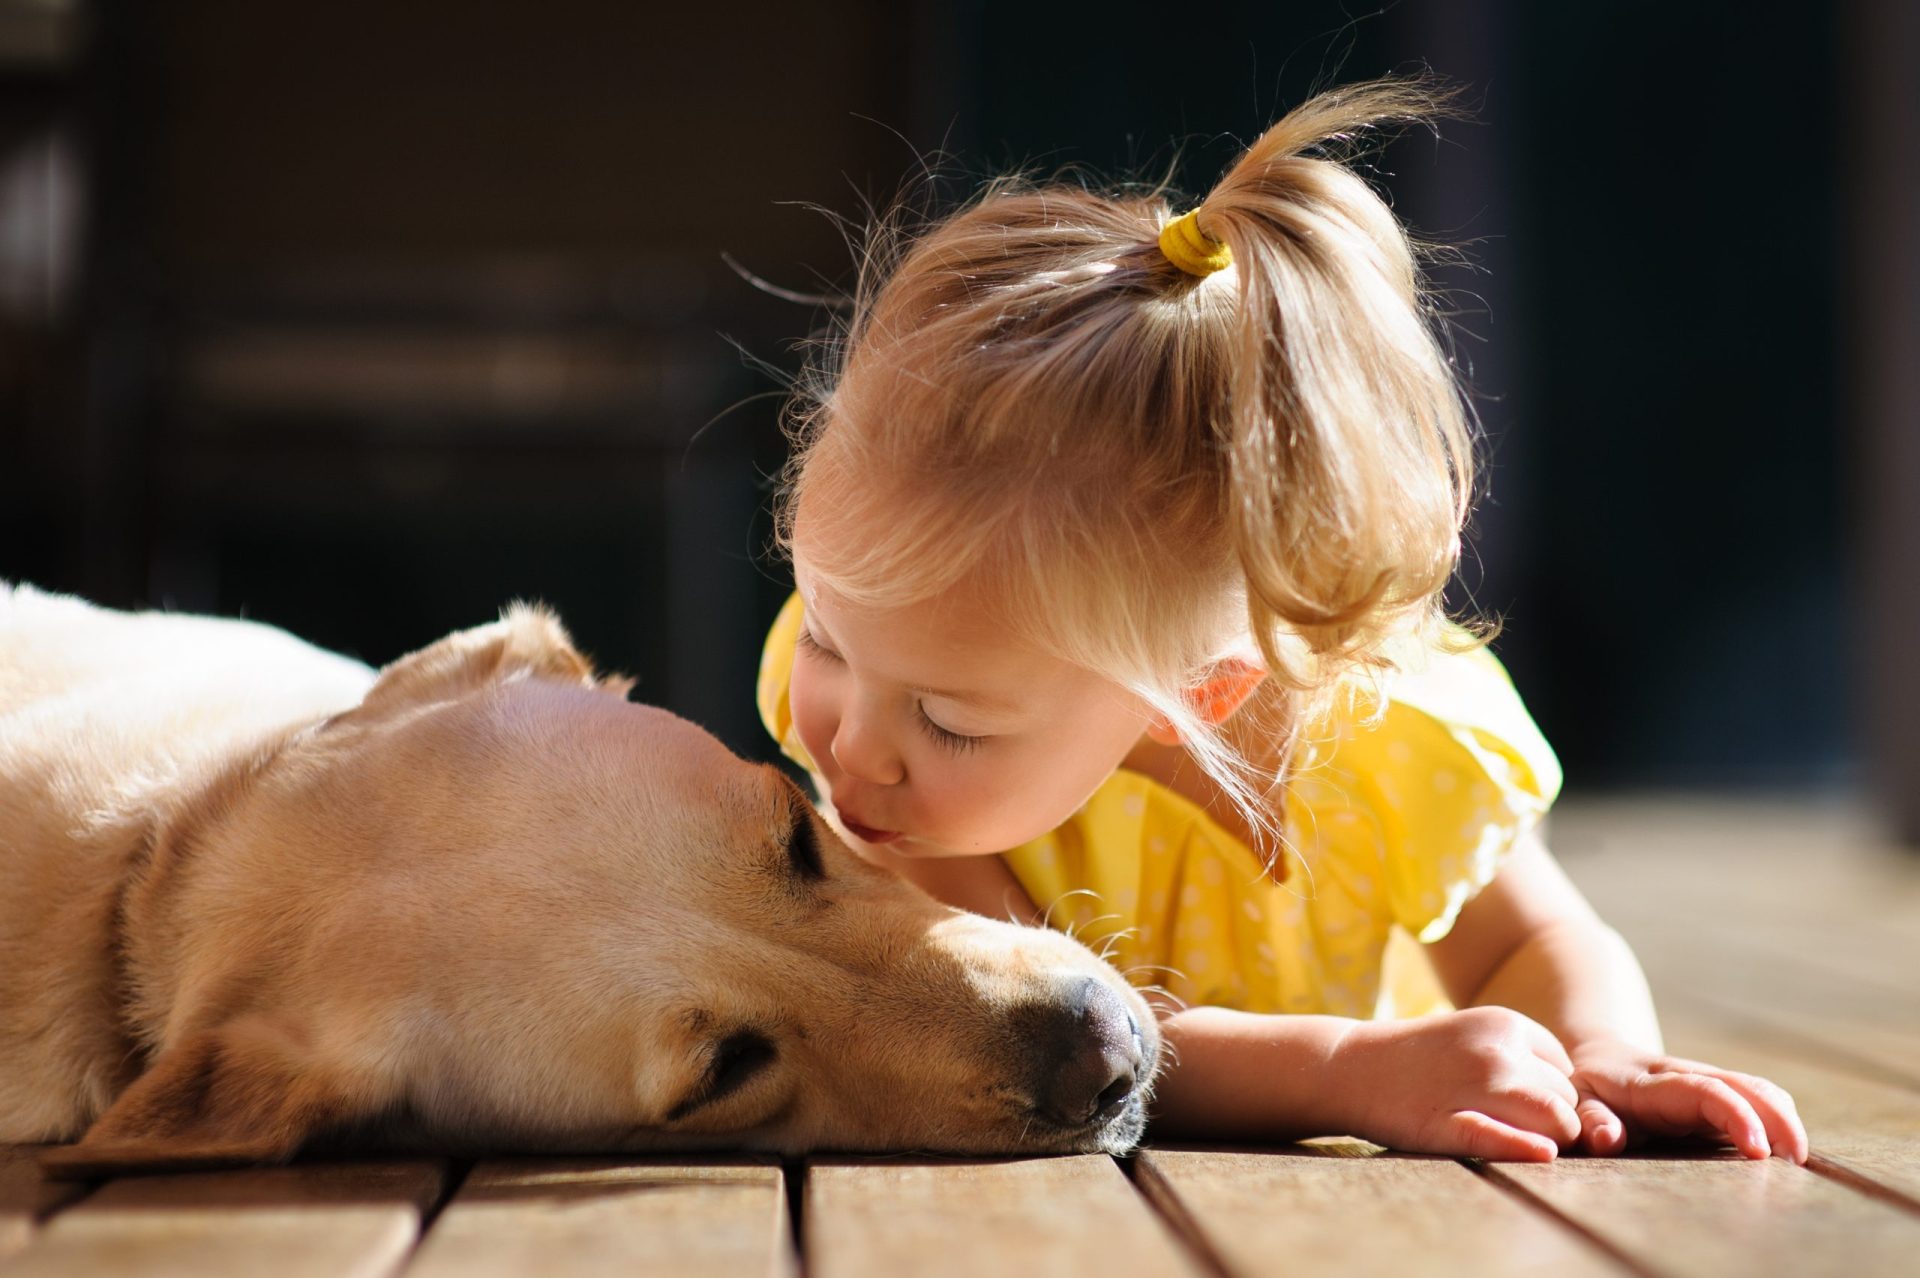 A amizade entre esta bebé e a sua cadela surda e cega tornou-se inquebrável [VÍDEO]